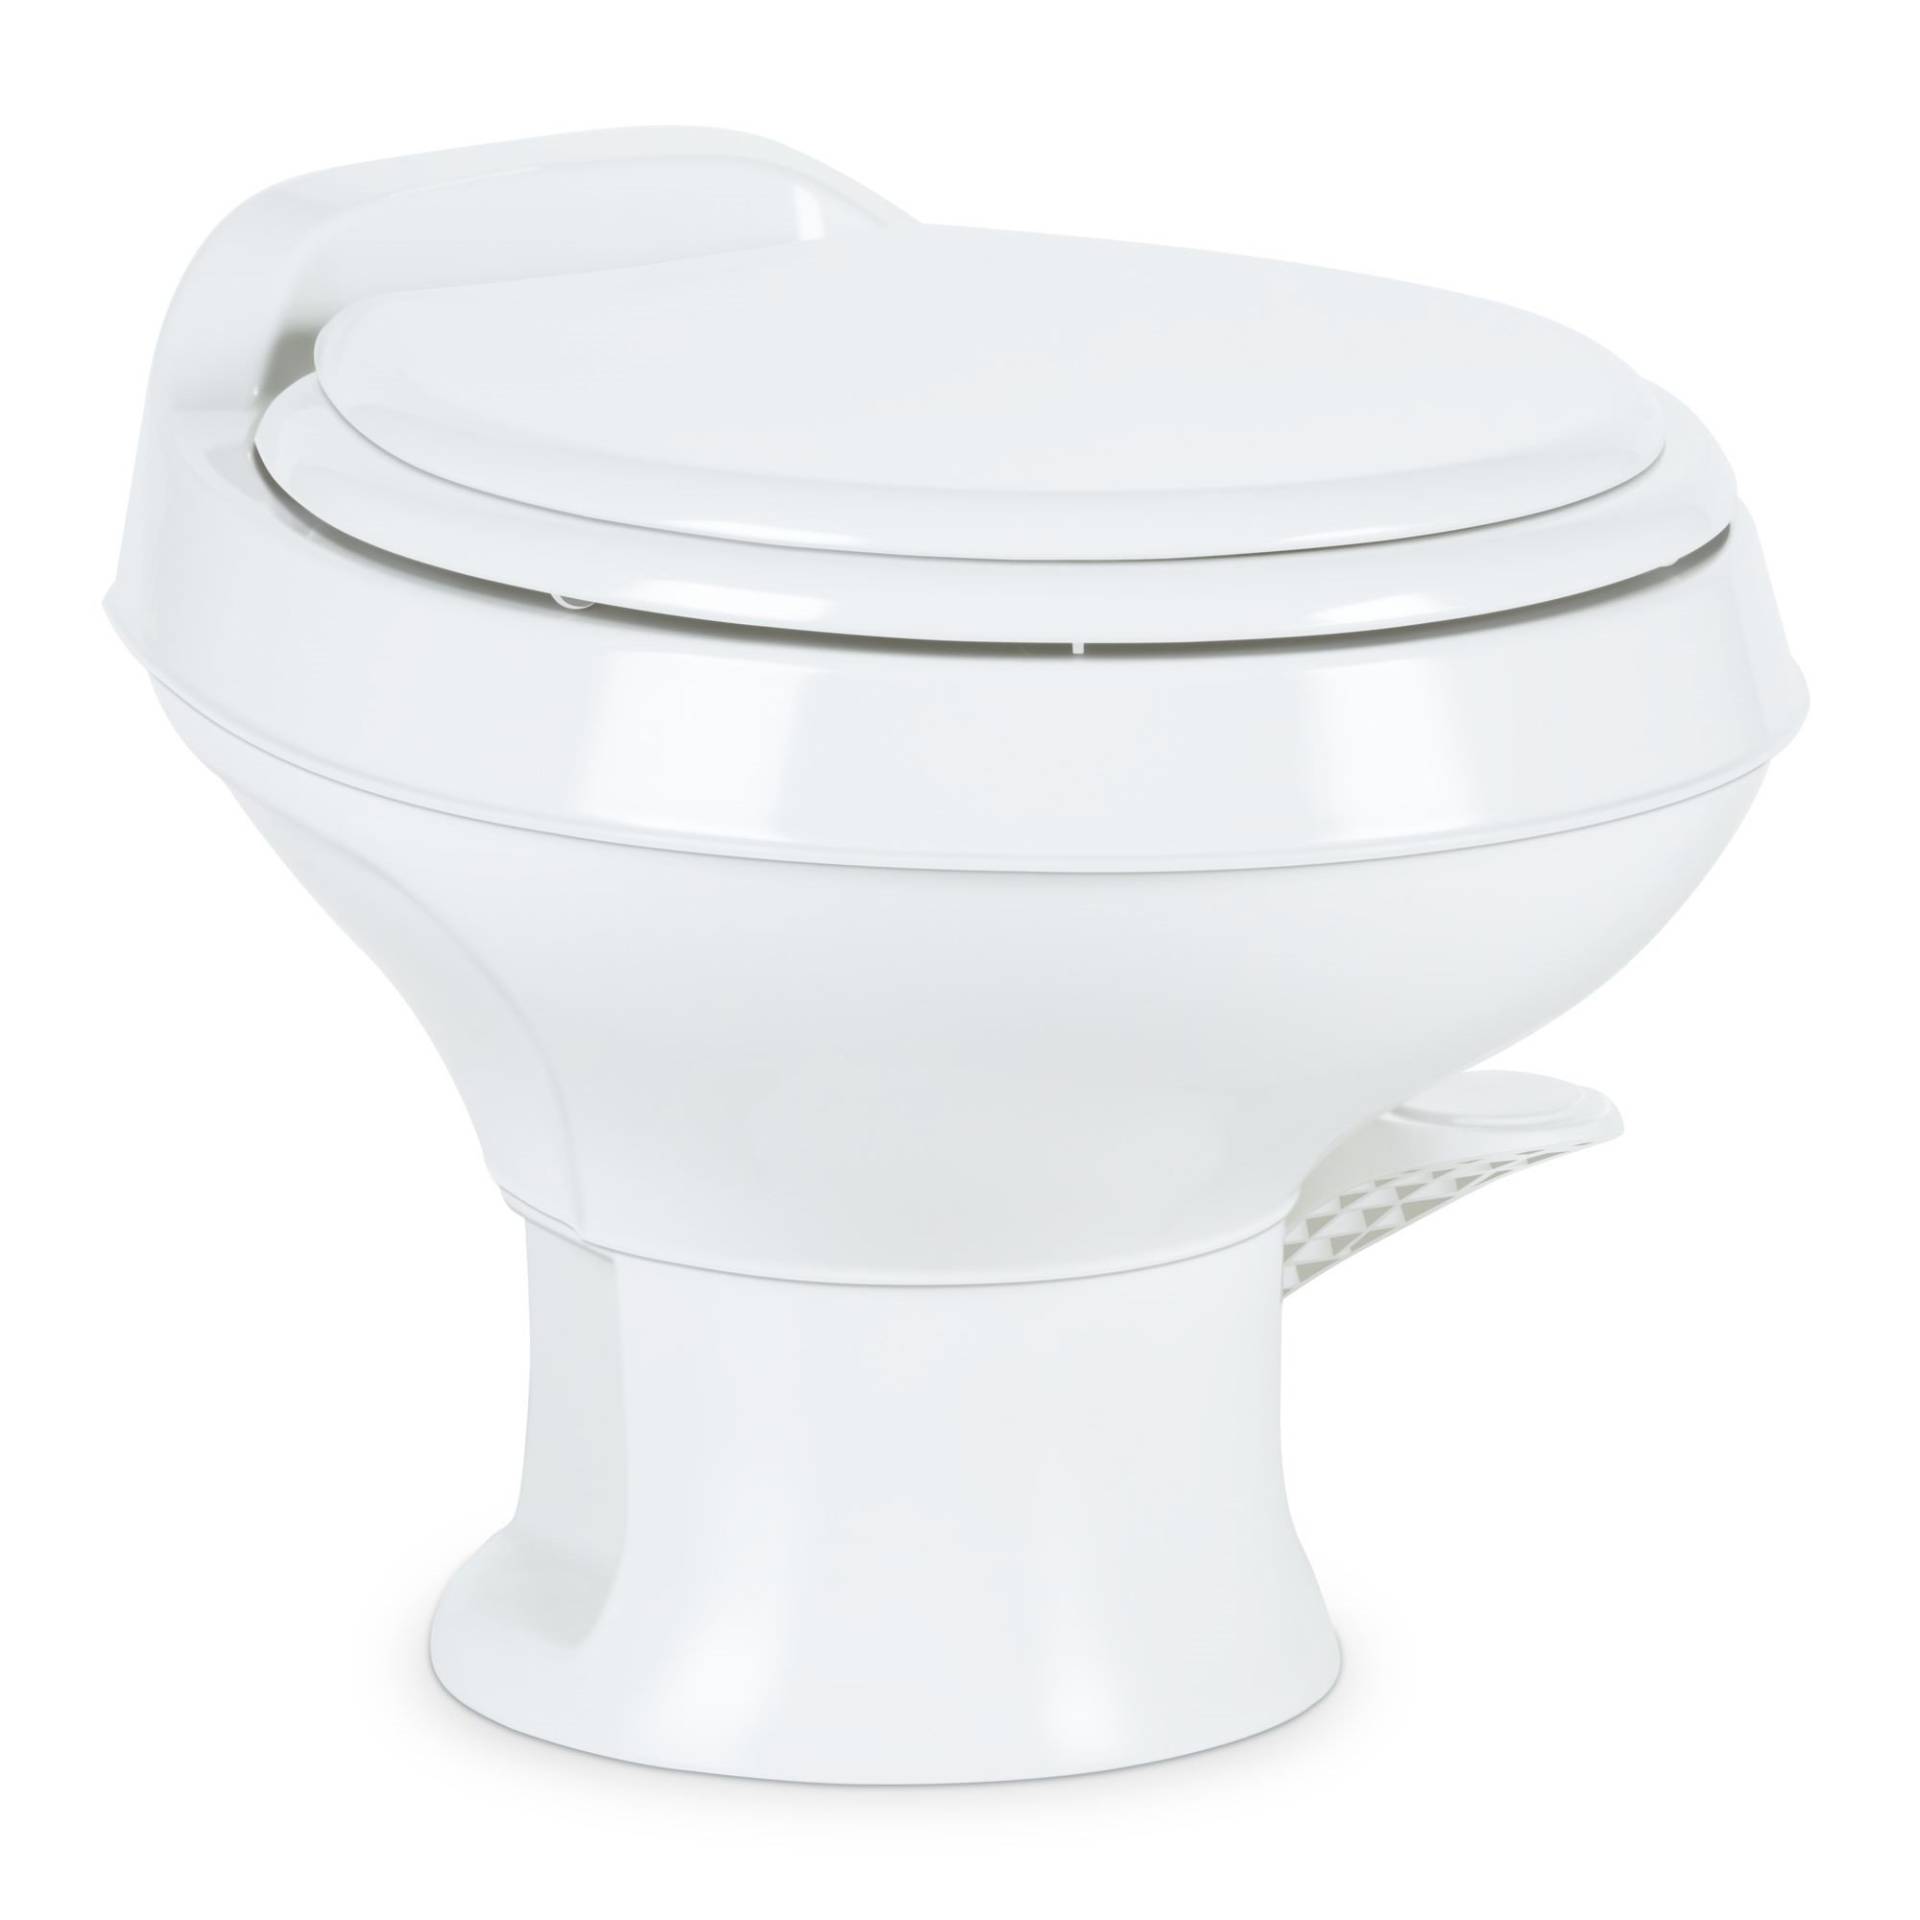 Dometic 301 Toilette, niedriges Profil, 34,3 cm Höhe, Weiß, 301-SS/RT/Weiß, volle Größe, Wohnstil, sauber und wasserdicht, Dreifachstrahlspülung mit Fußpedal von DOMETIC